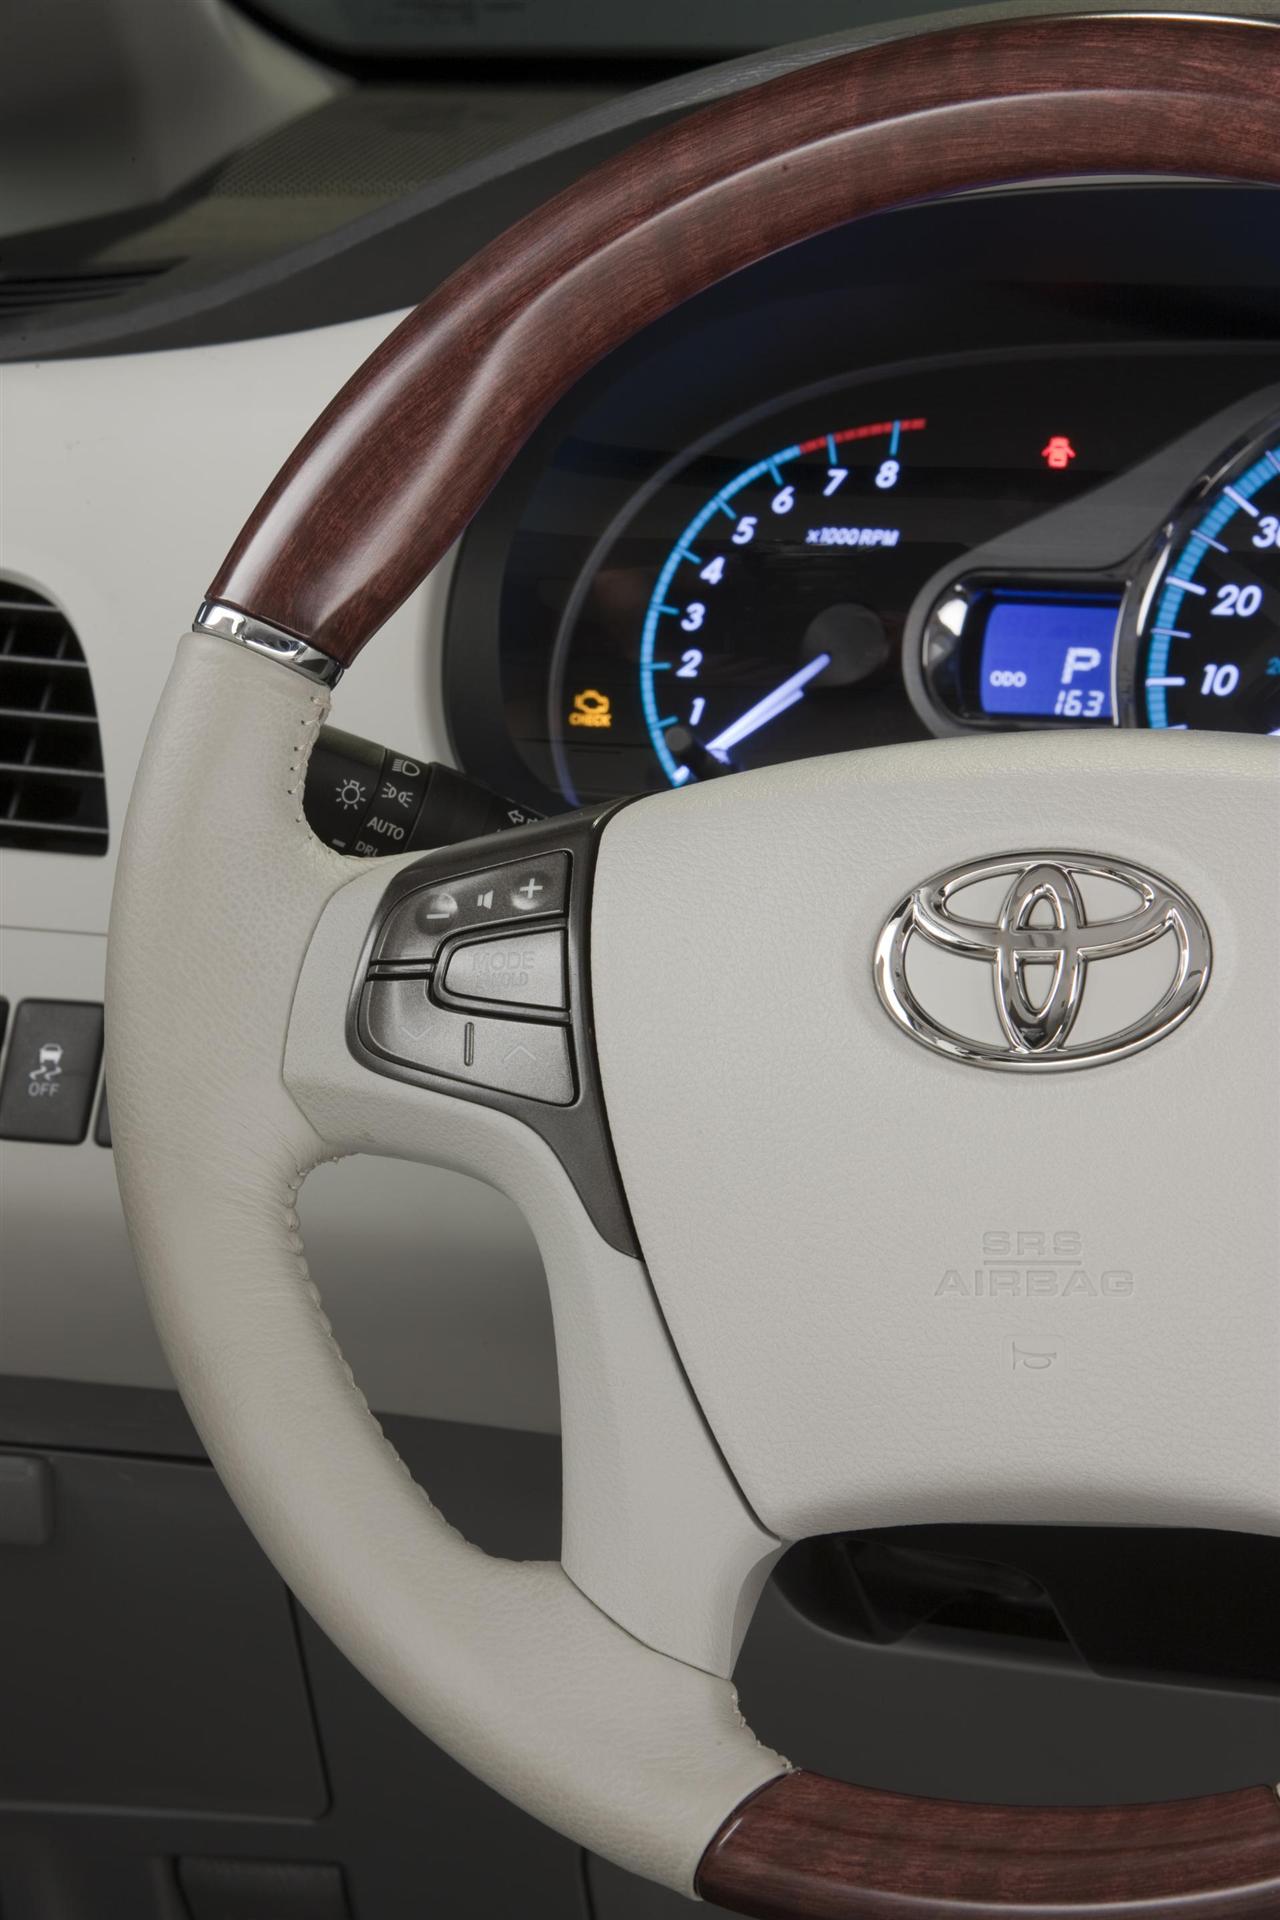 2012 Toyota Sienna